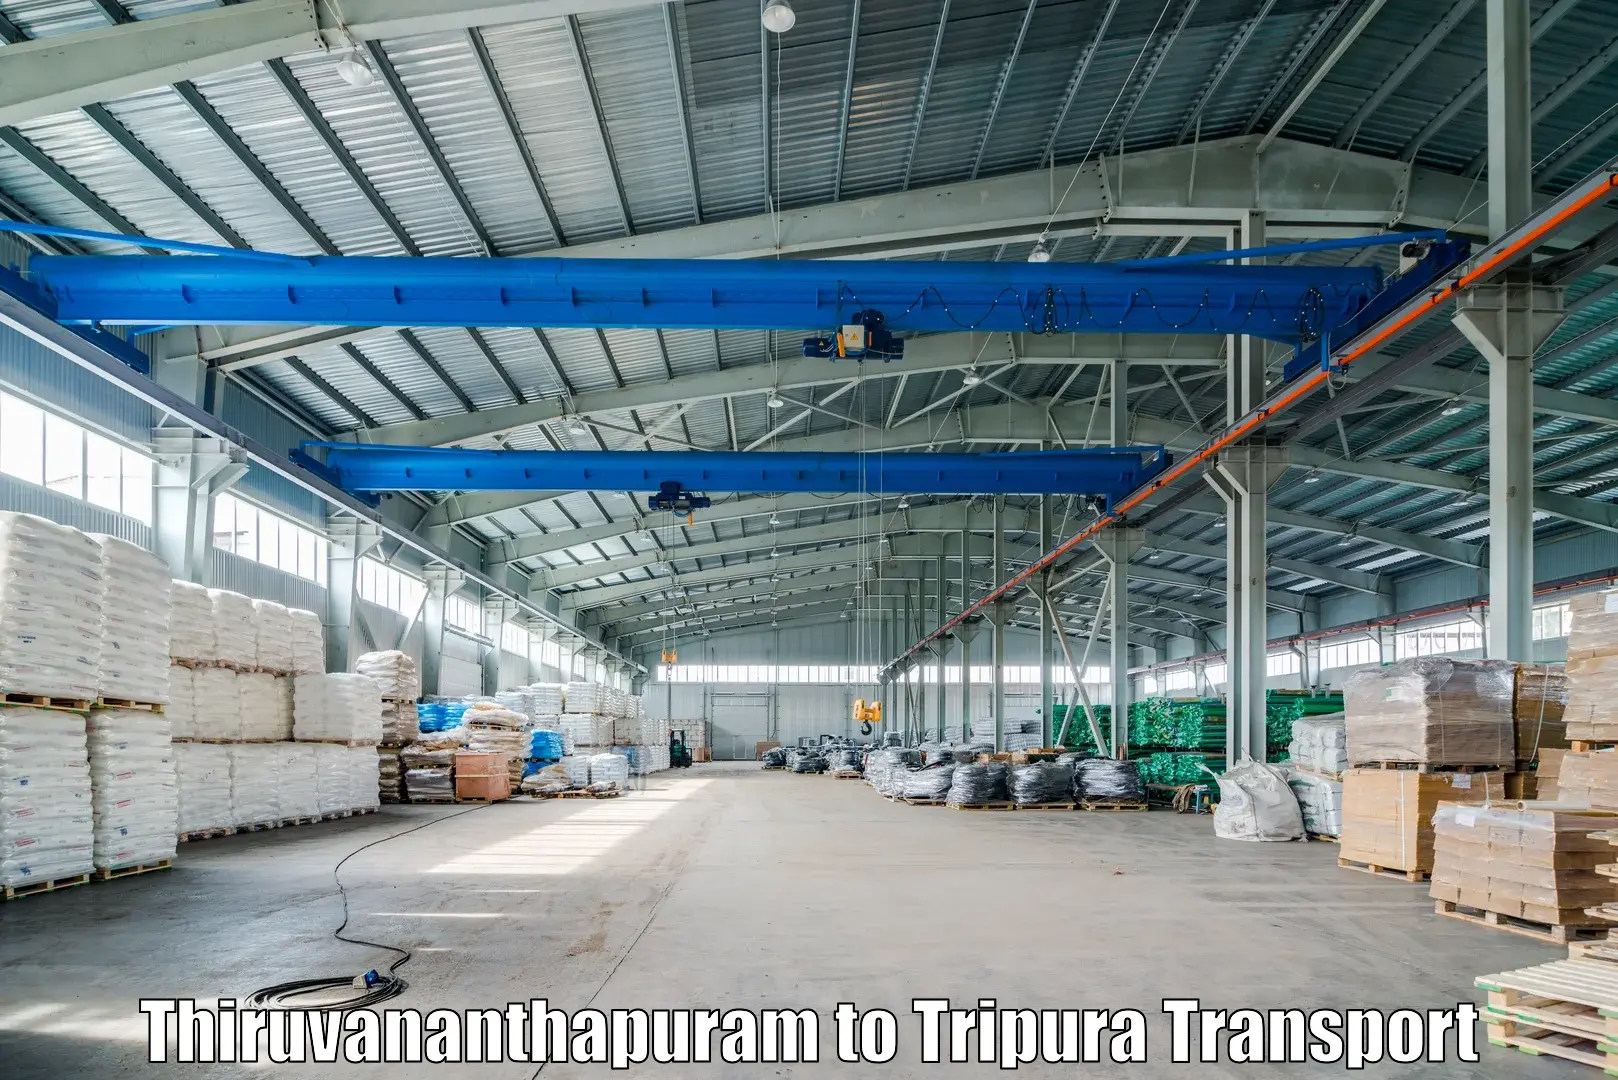 Container transport service Thiruvananthapuram to Radhakishorepur